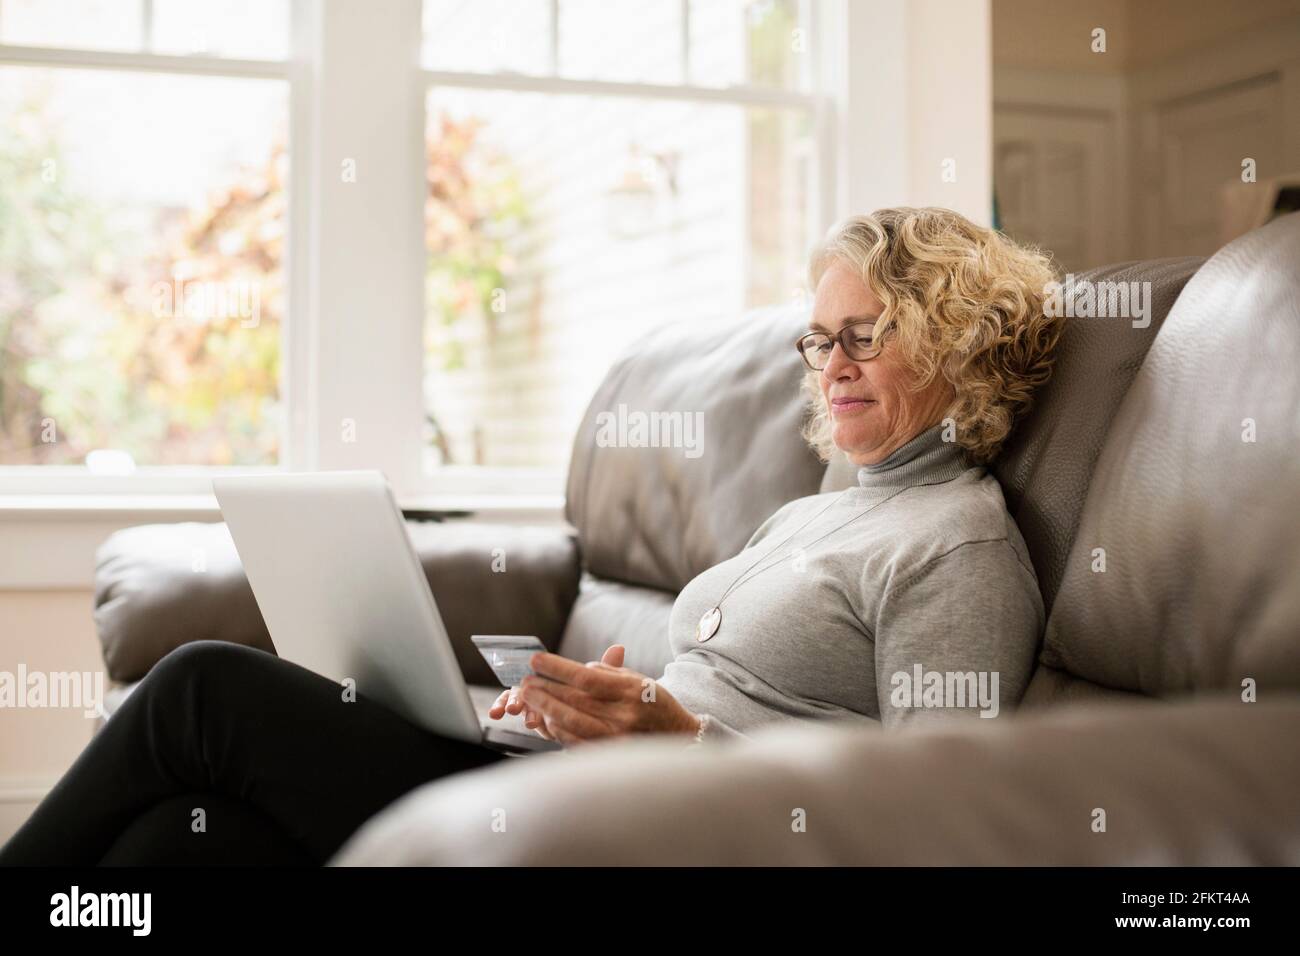 Senior woman shopping online on laptop Stock Photo